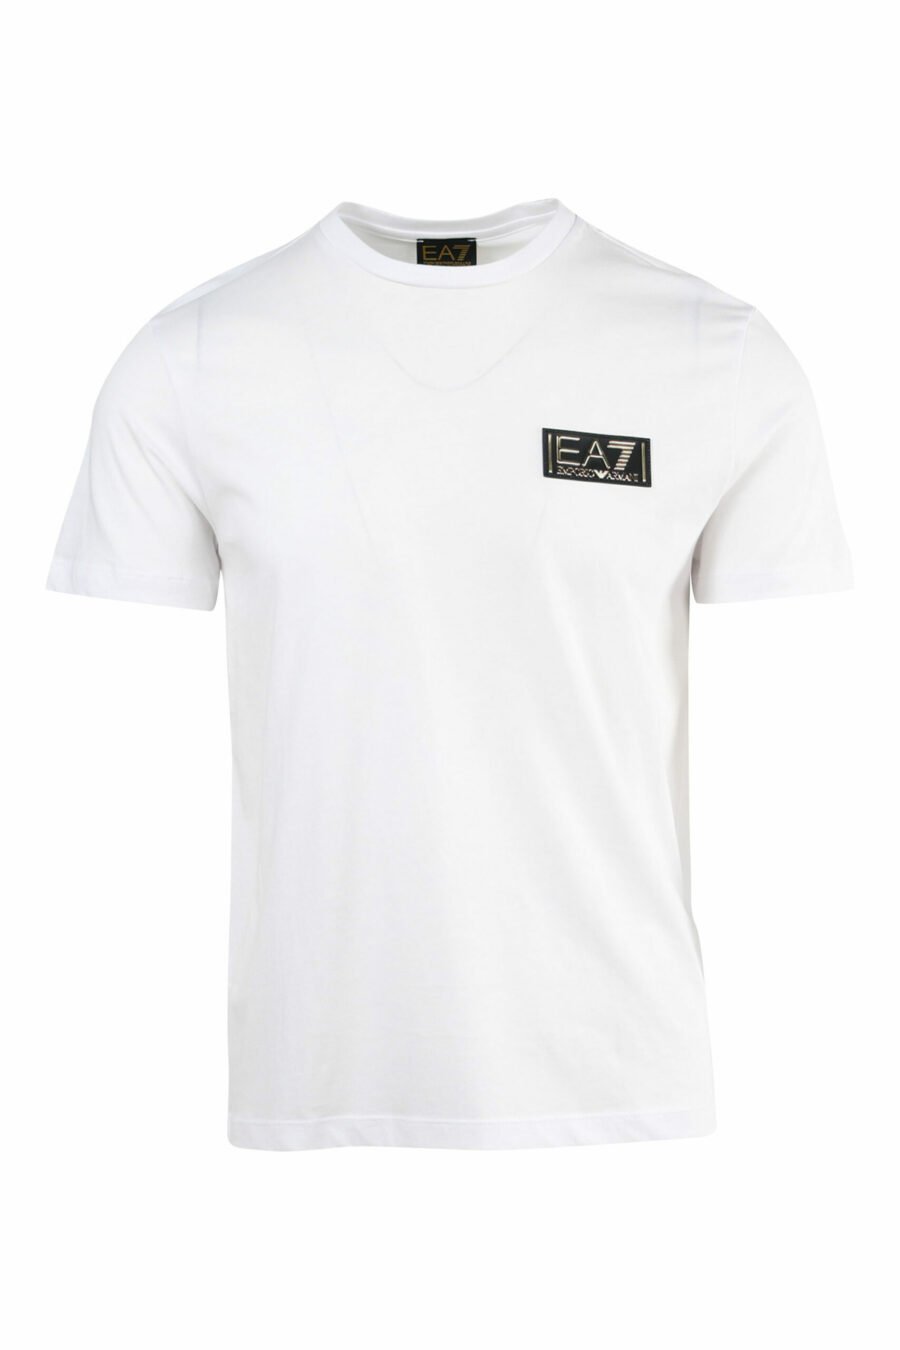 Weißes T-Shirt mit goldenem "lux identity"-Mini-Logo - 8057767515720 1 skaliert